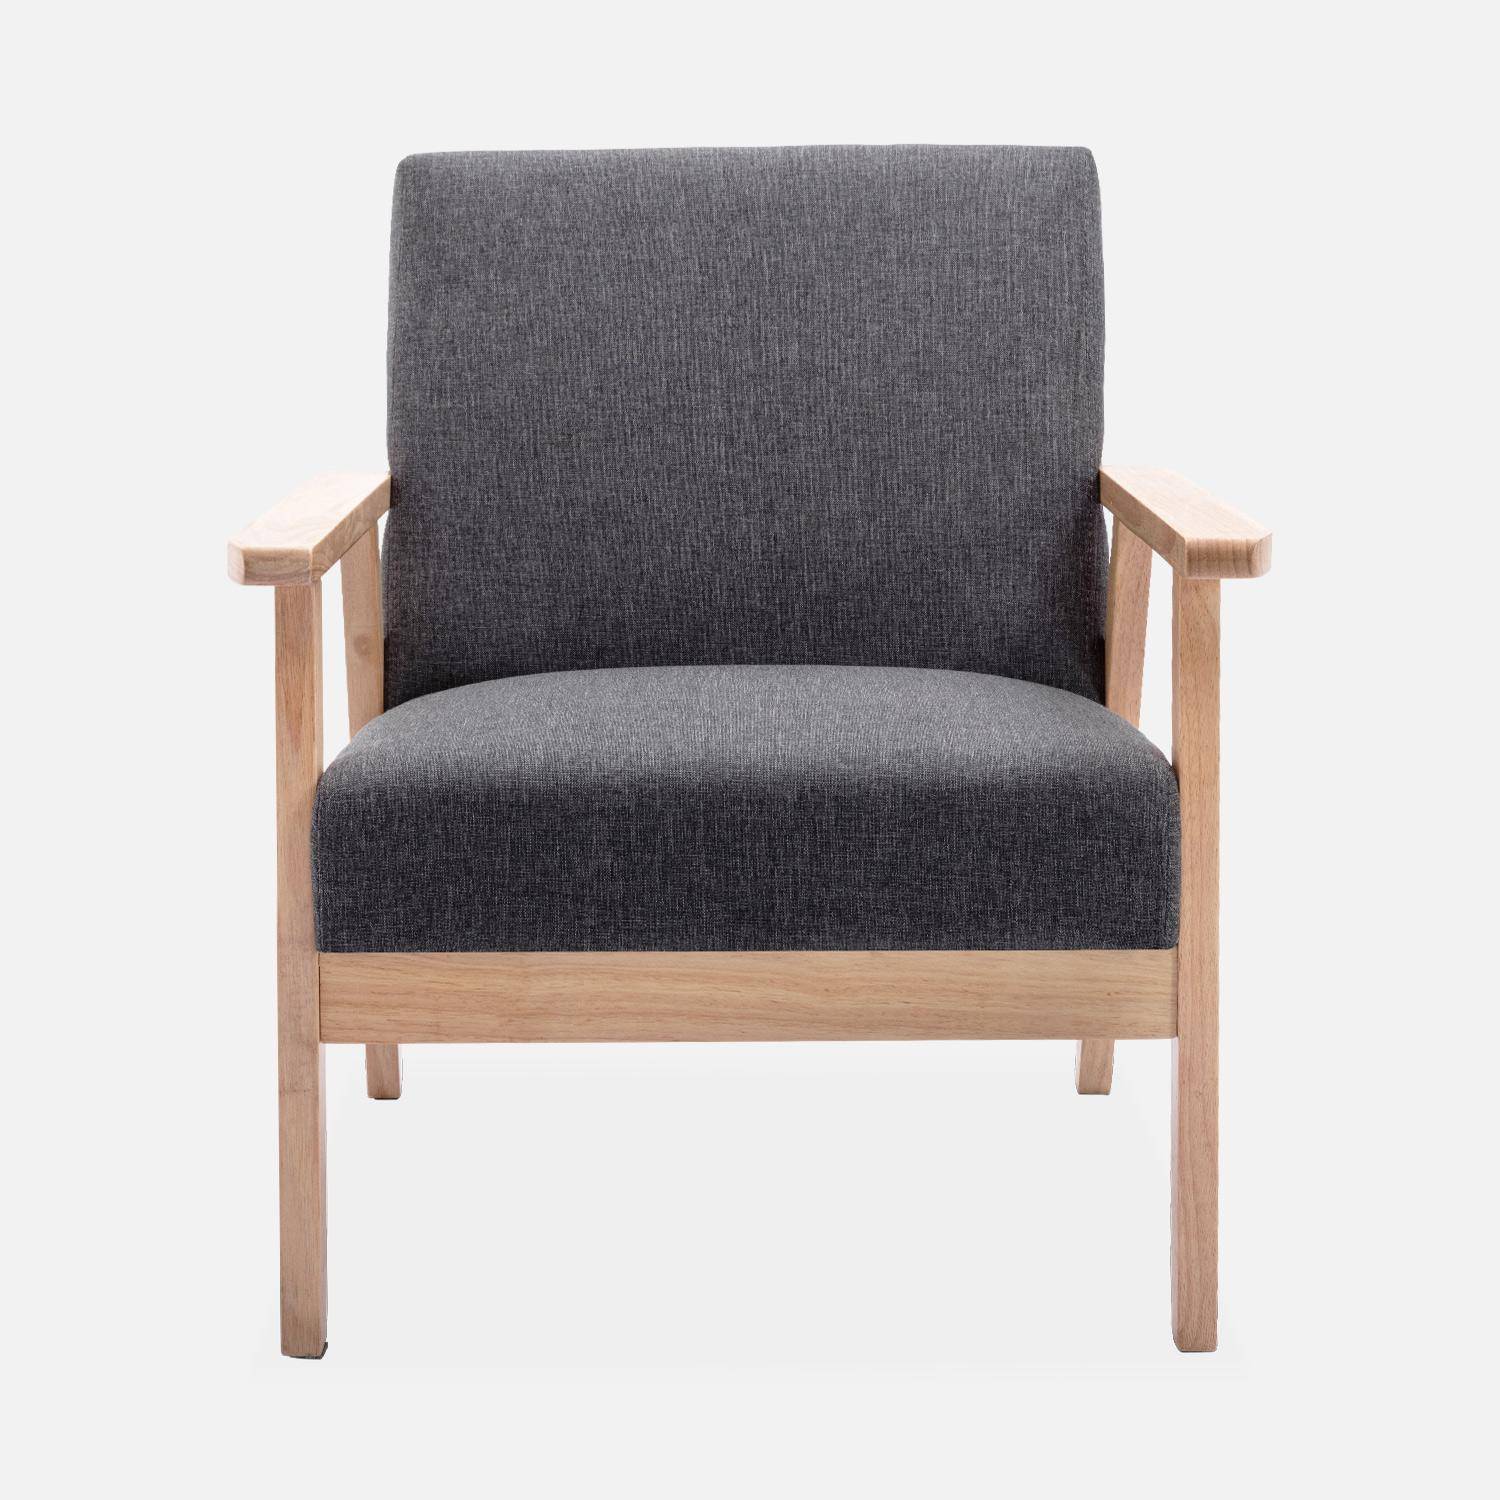 Banquette et fauteuil en bois et tissu gris foncé, Isak, L 114 x l 69,5 x H 73cm,sweeek,Photo4